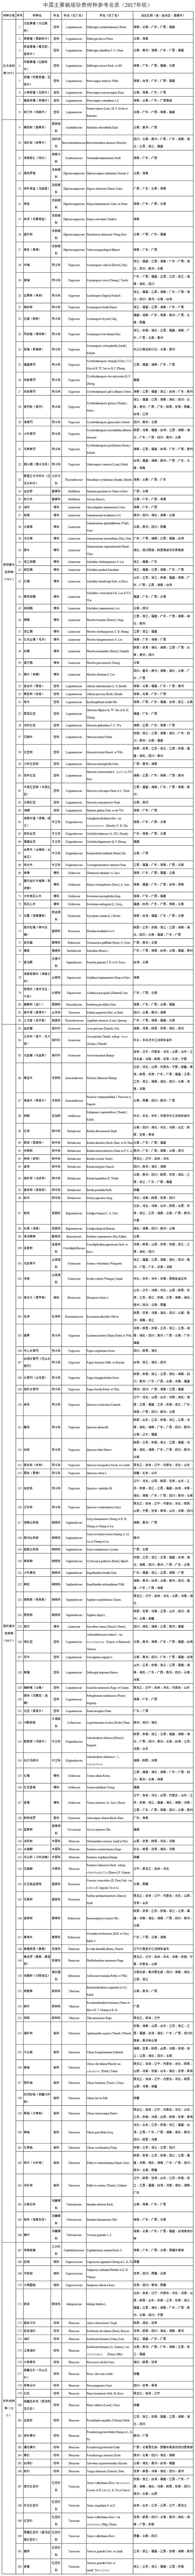 国家林业局关于印发《中国主要栽培珍贵树种参考名录（2017年版）》的通知.jpg